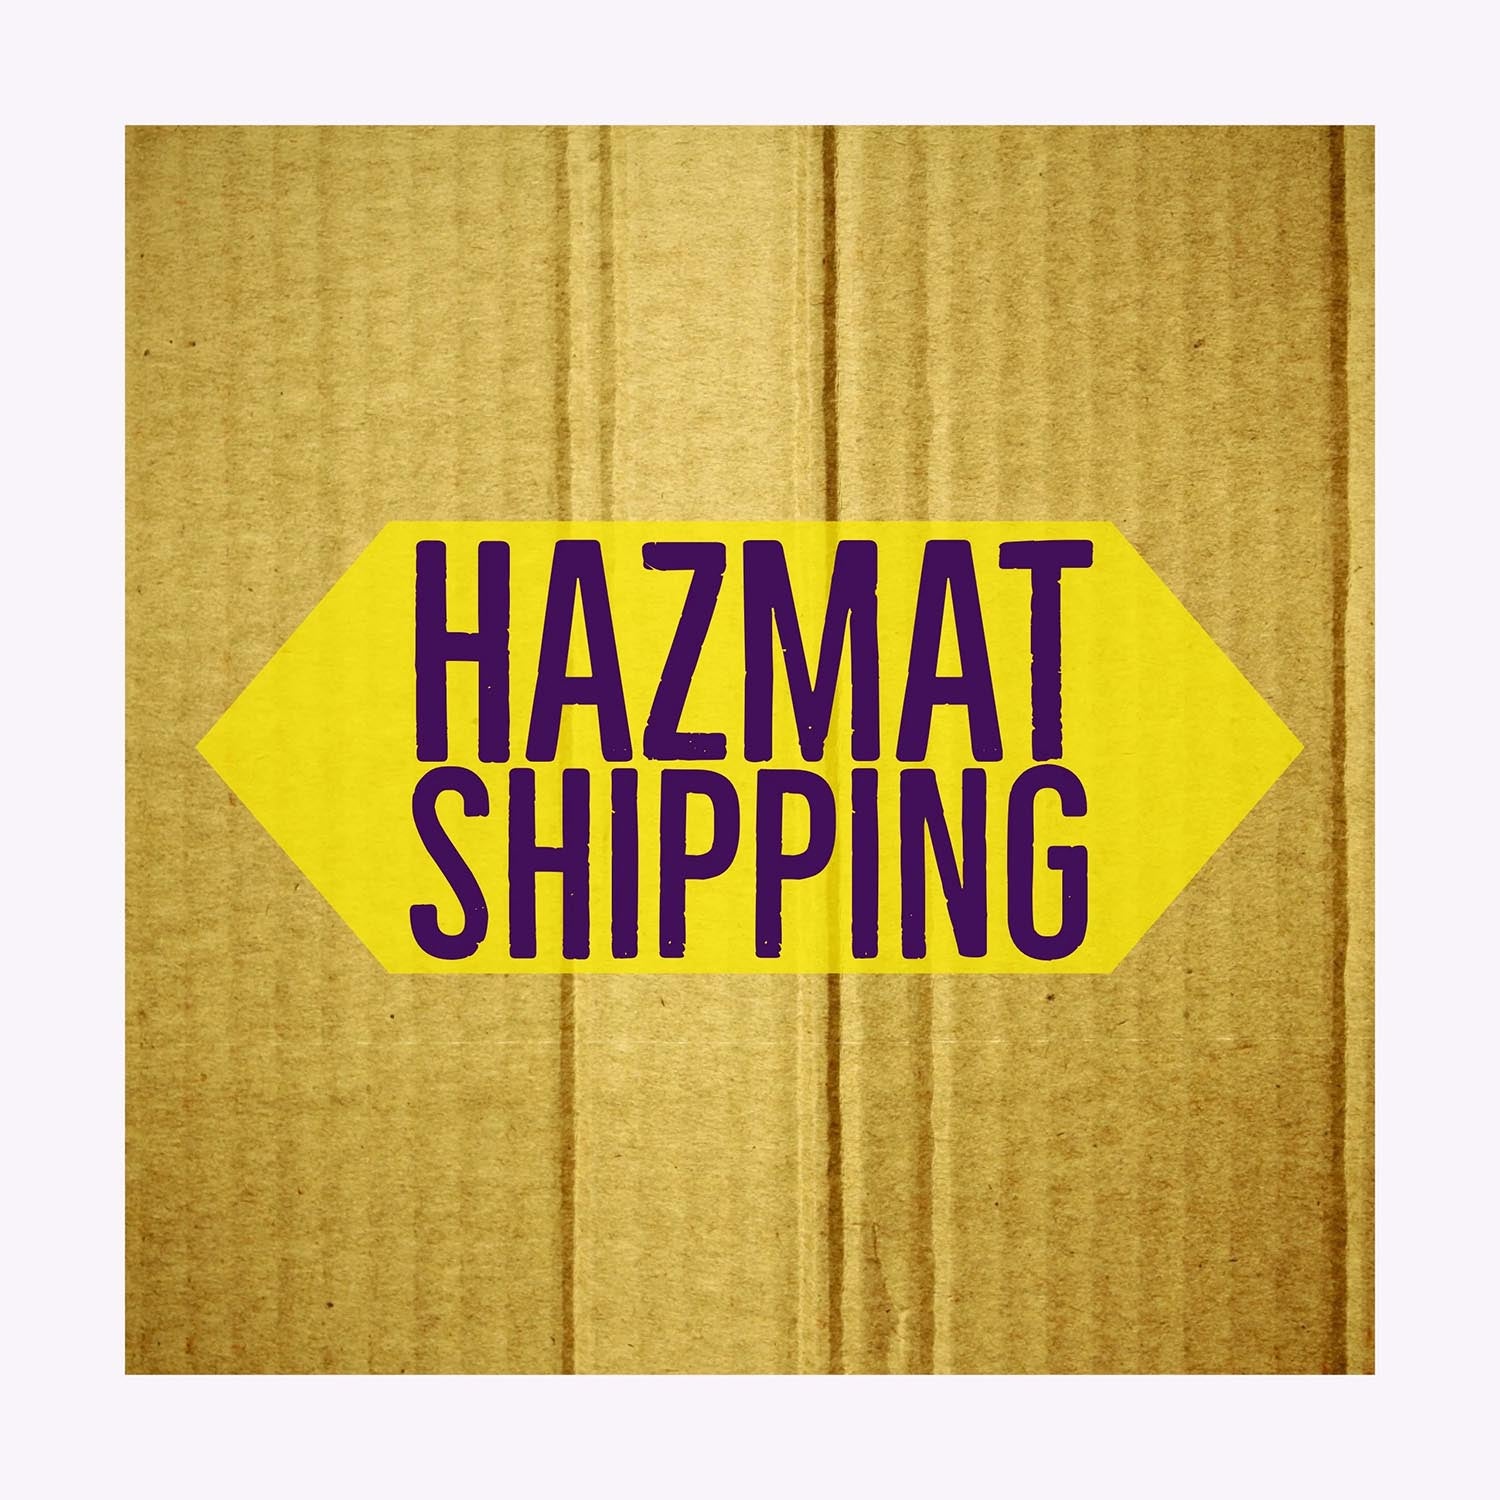 Hazardous Material Shipping Fee (1 - 5 gallons)